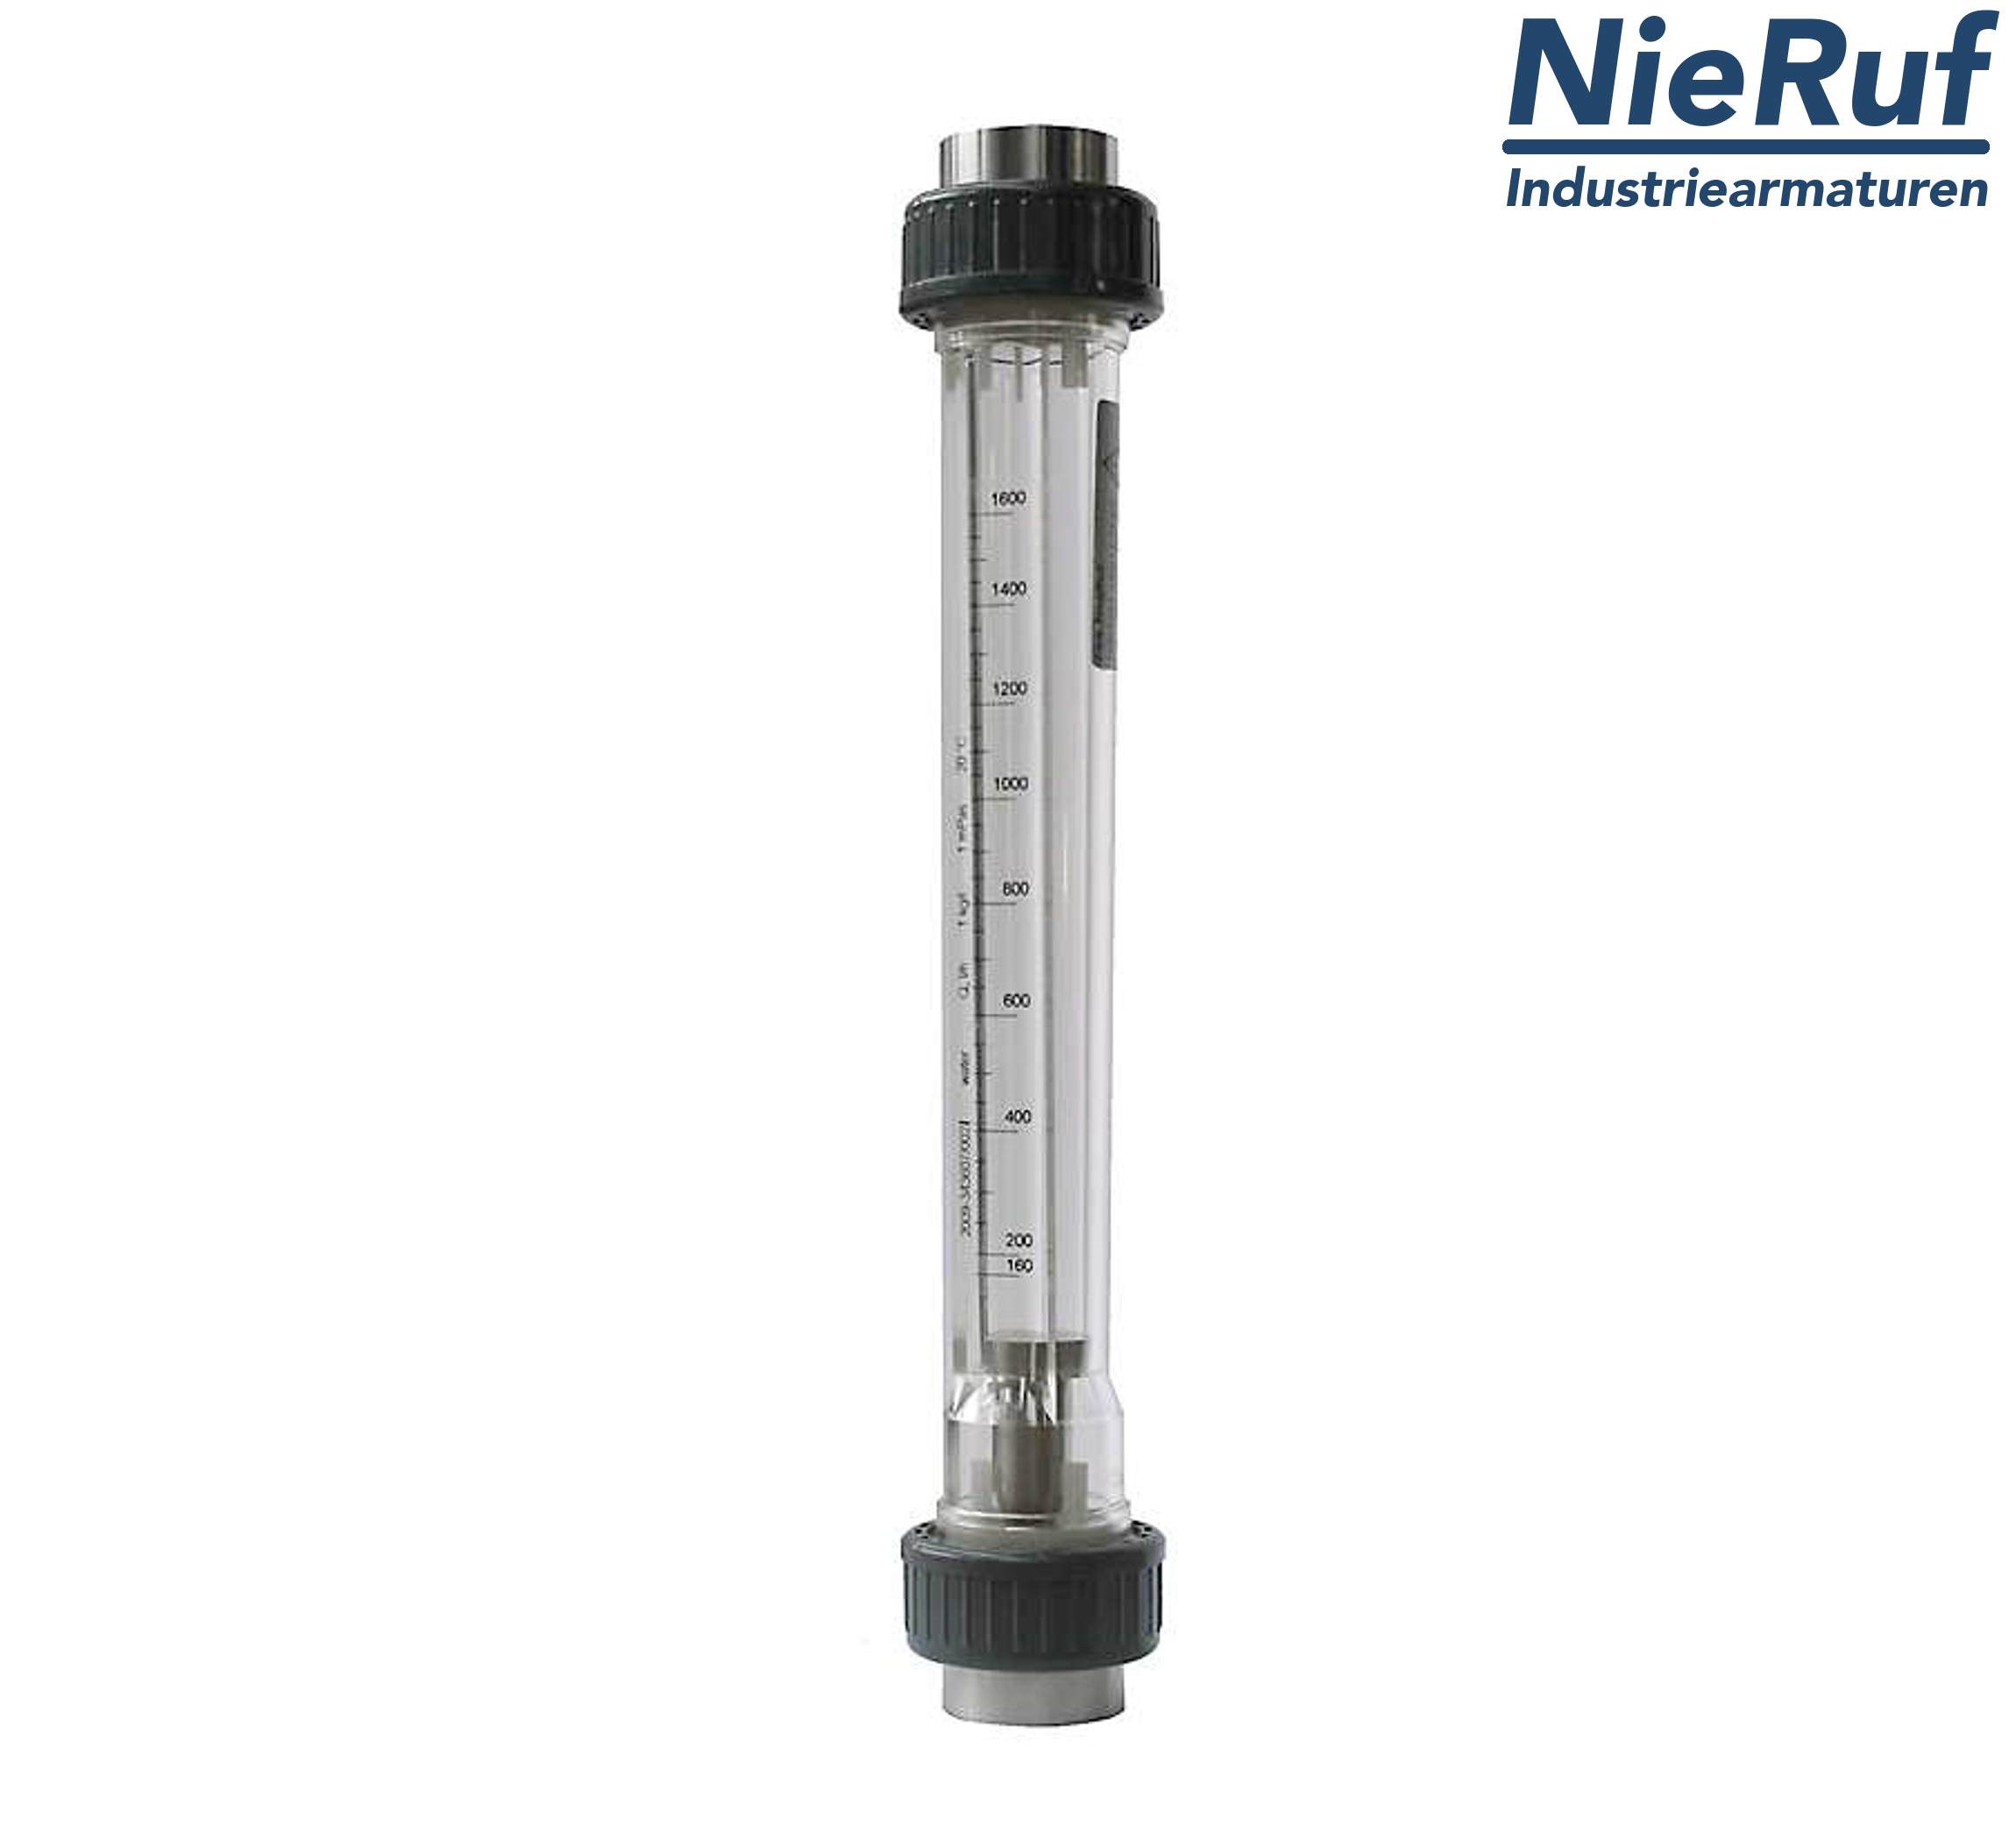 Variable area flowmeter 1 1/4" Inch NPT 117000.0 - 350000 l/h air NBR